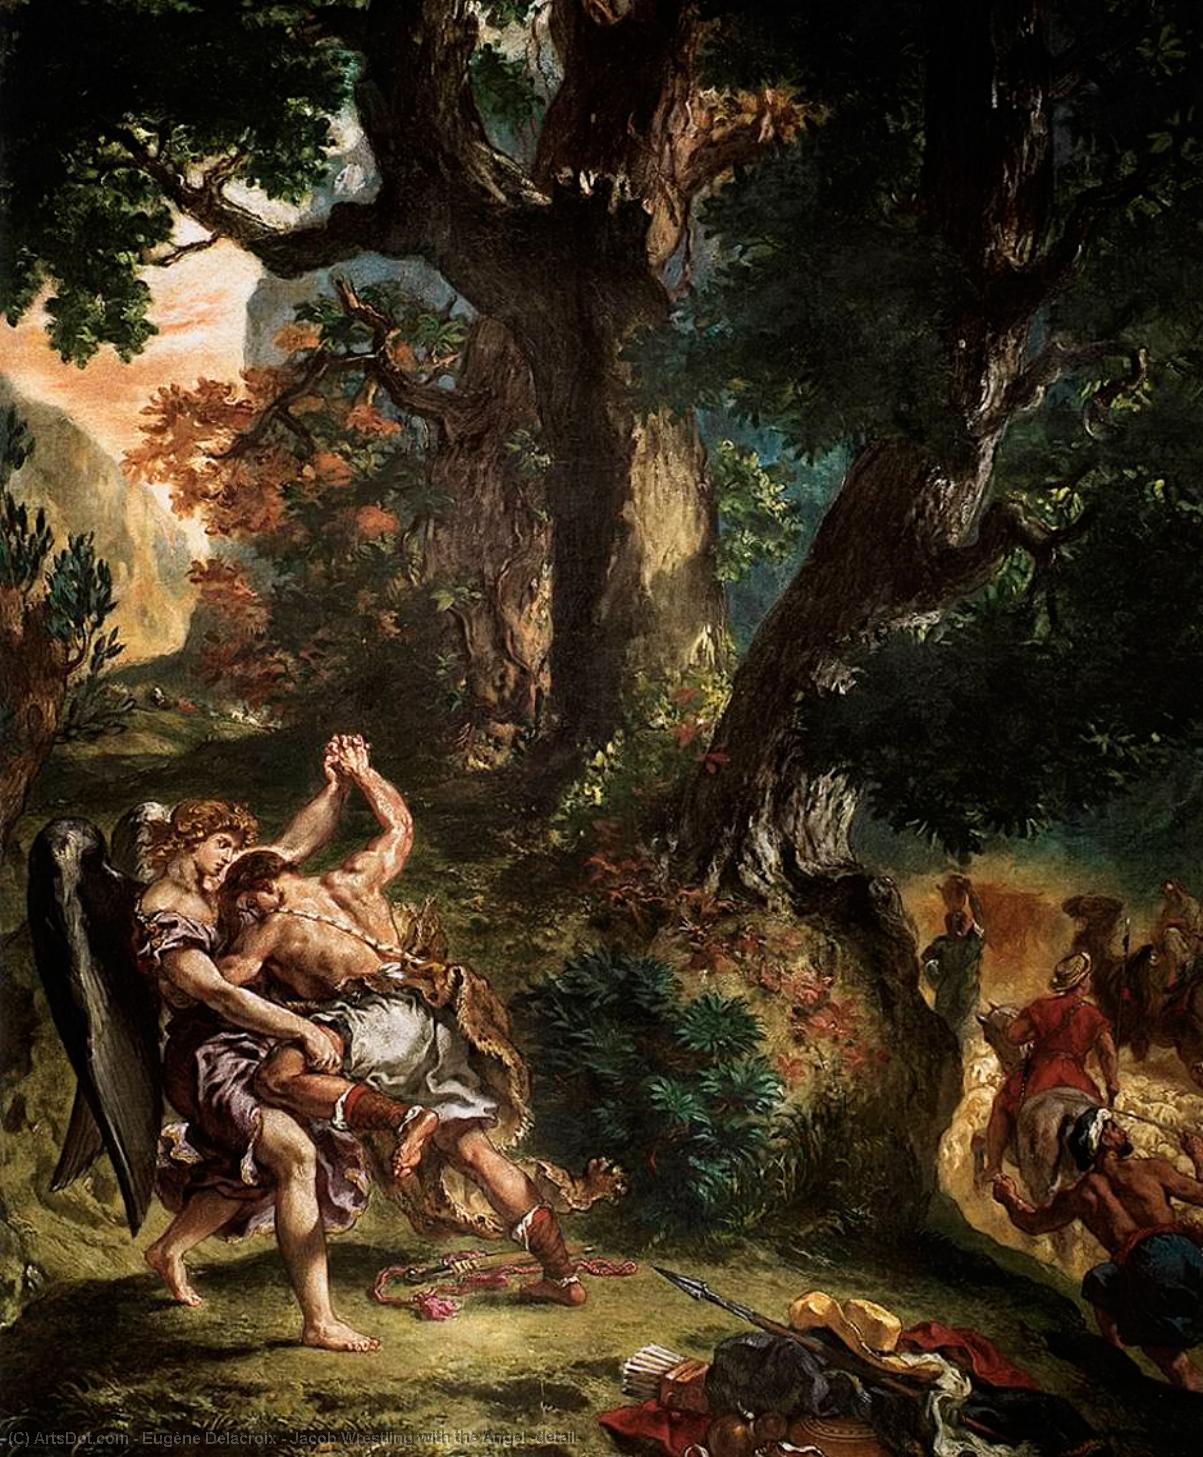 WikiOO.org - אנציקלופדיה לאמנויות יפות - ציור, יצירות אמנות Eugène Delacroix - Jacob Wrestling with the Angel (detail)